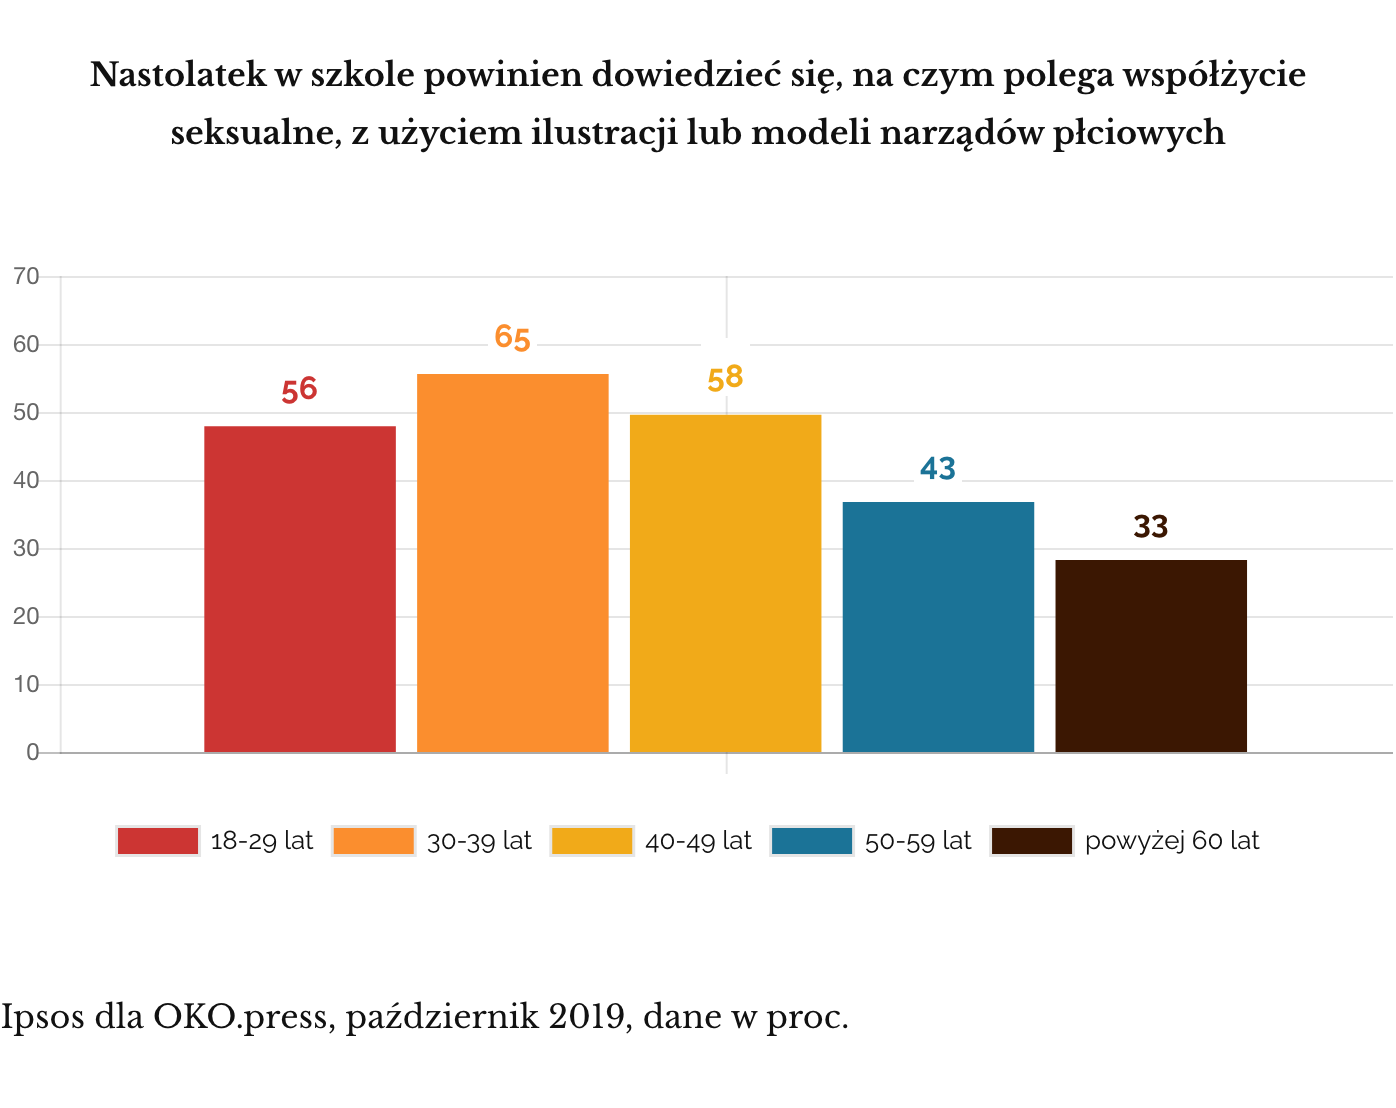 Ipsos dla OKO.press, październik 2019. O gadżetach w edukacji seksualnej według wieku